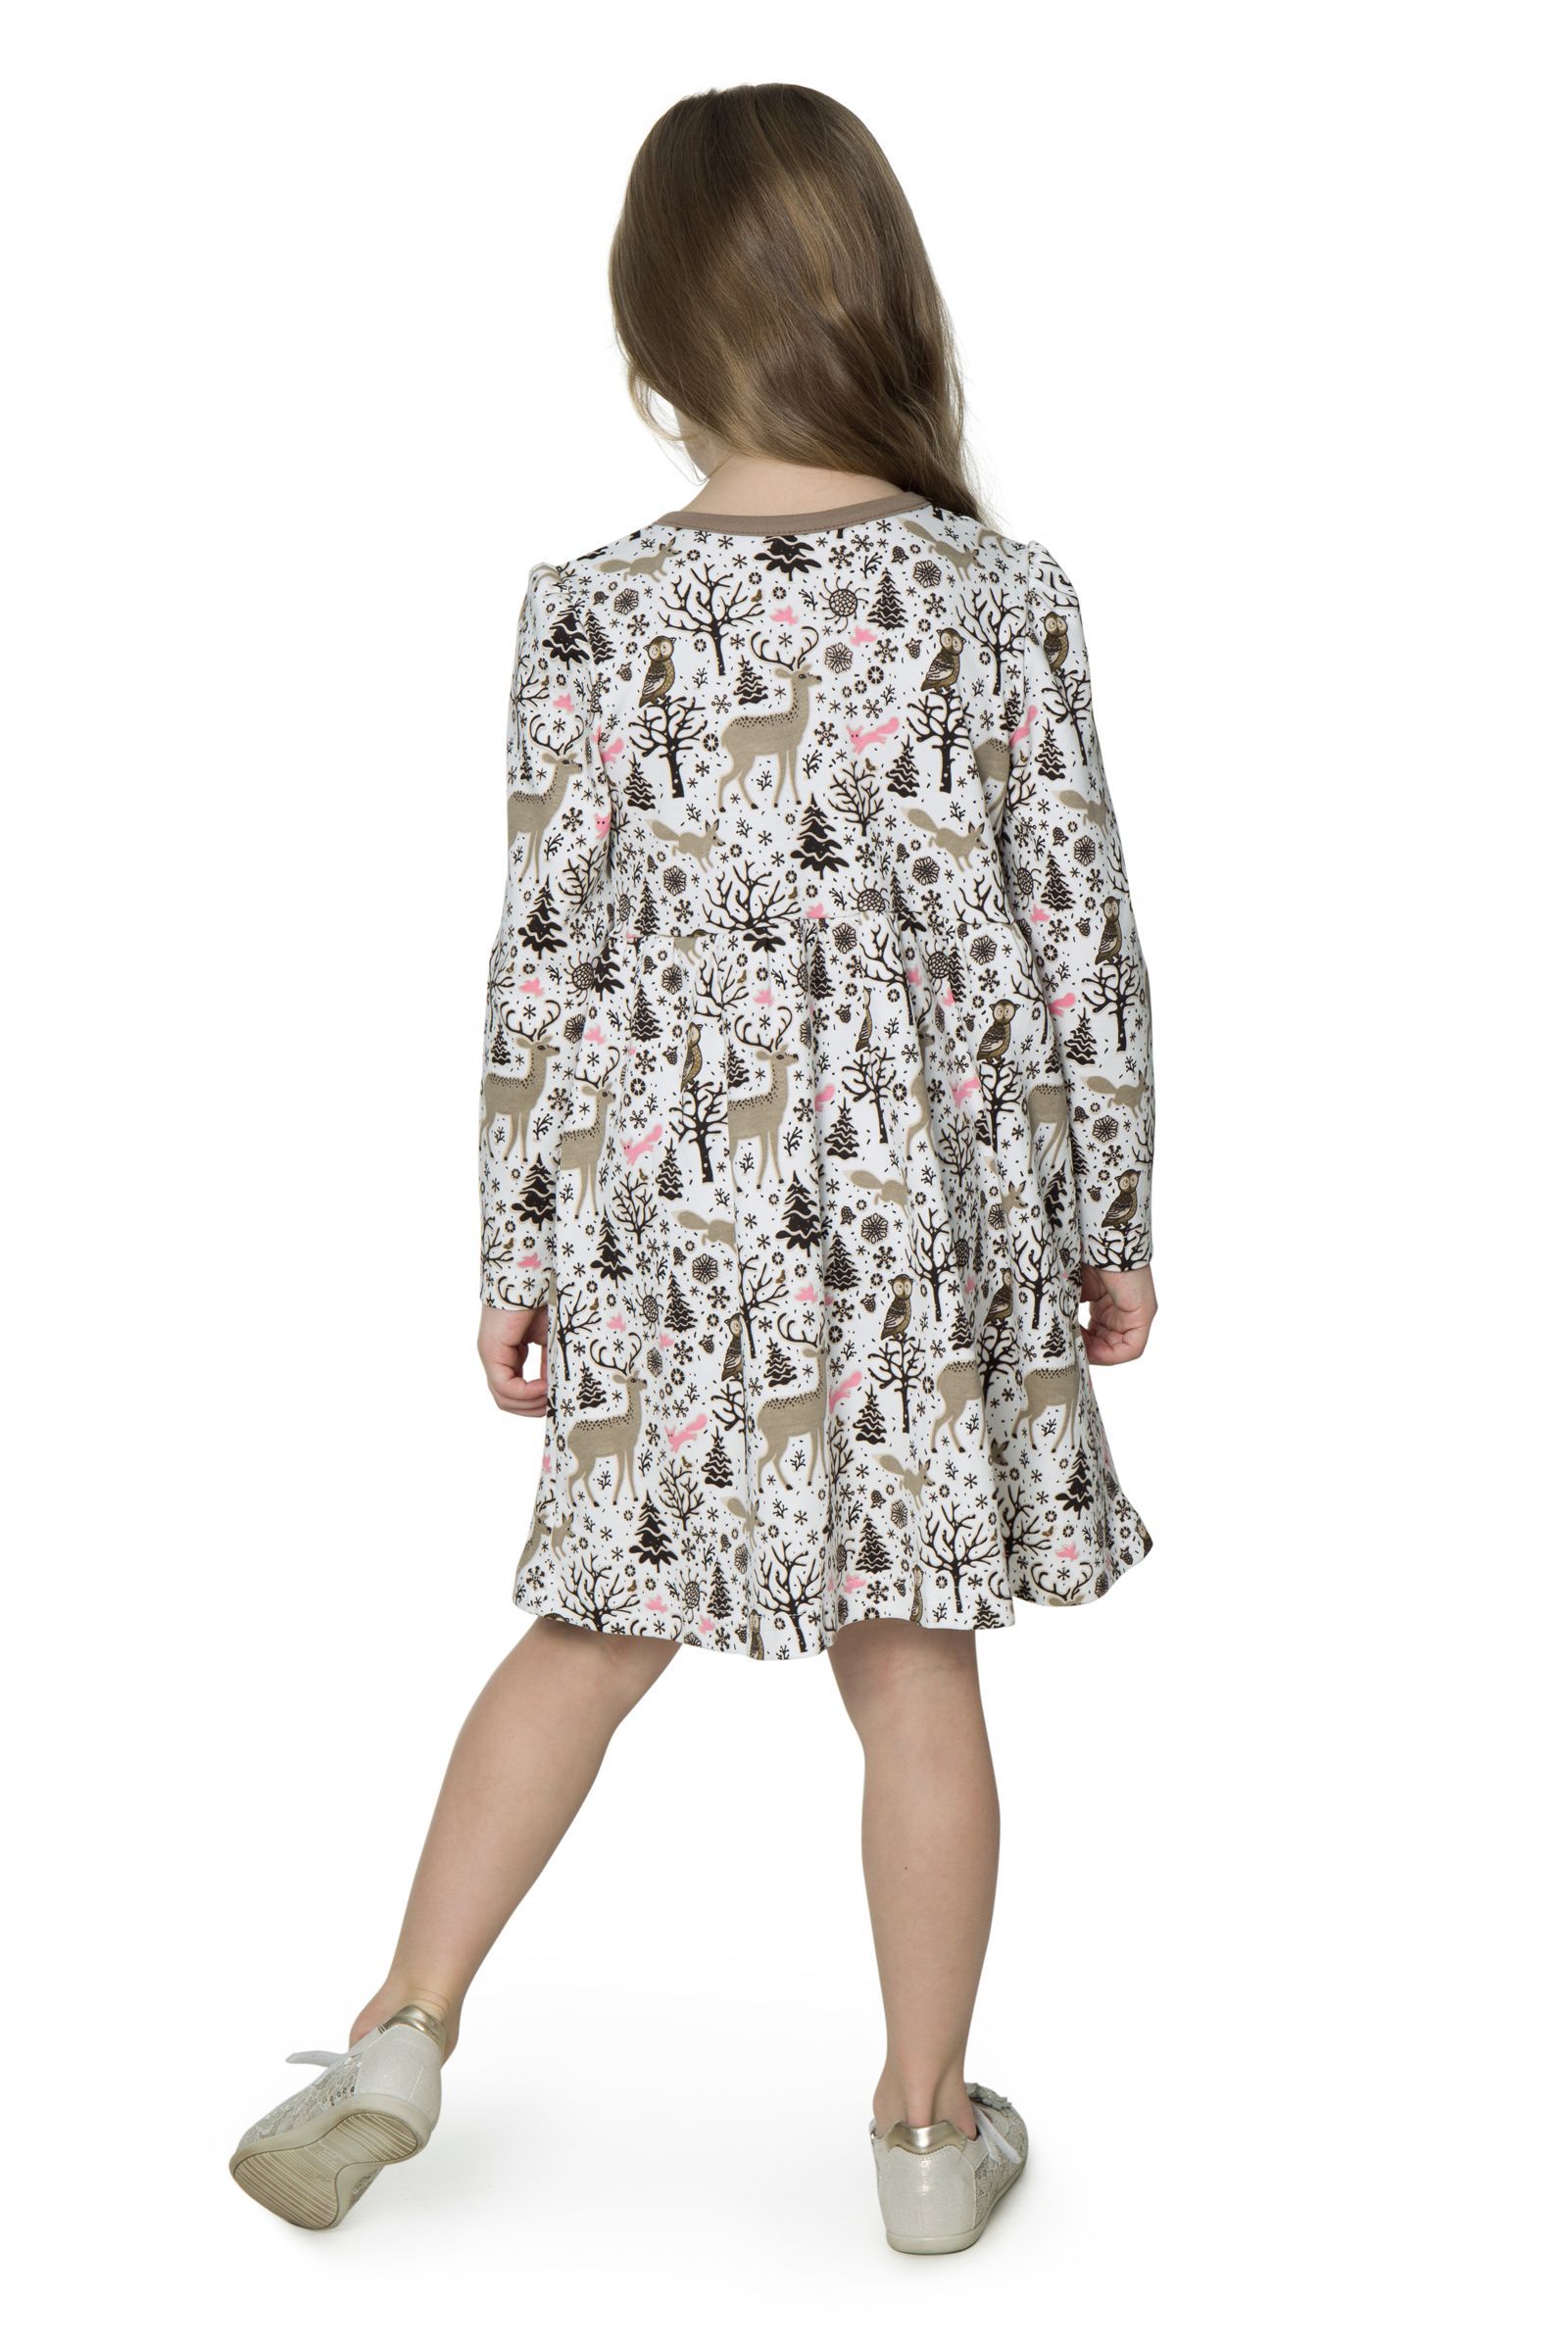 Платье-ПЛ01-2480 оптом от производителя детской одежды 'Алёна'